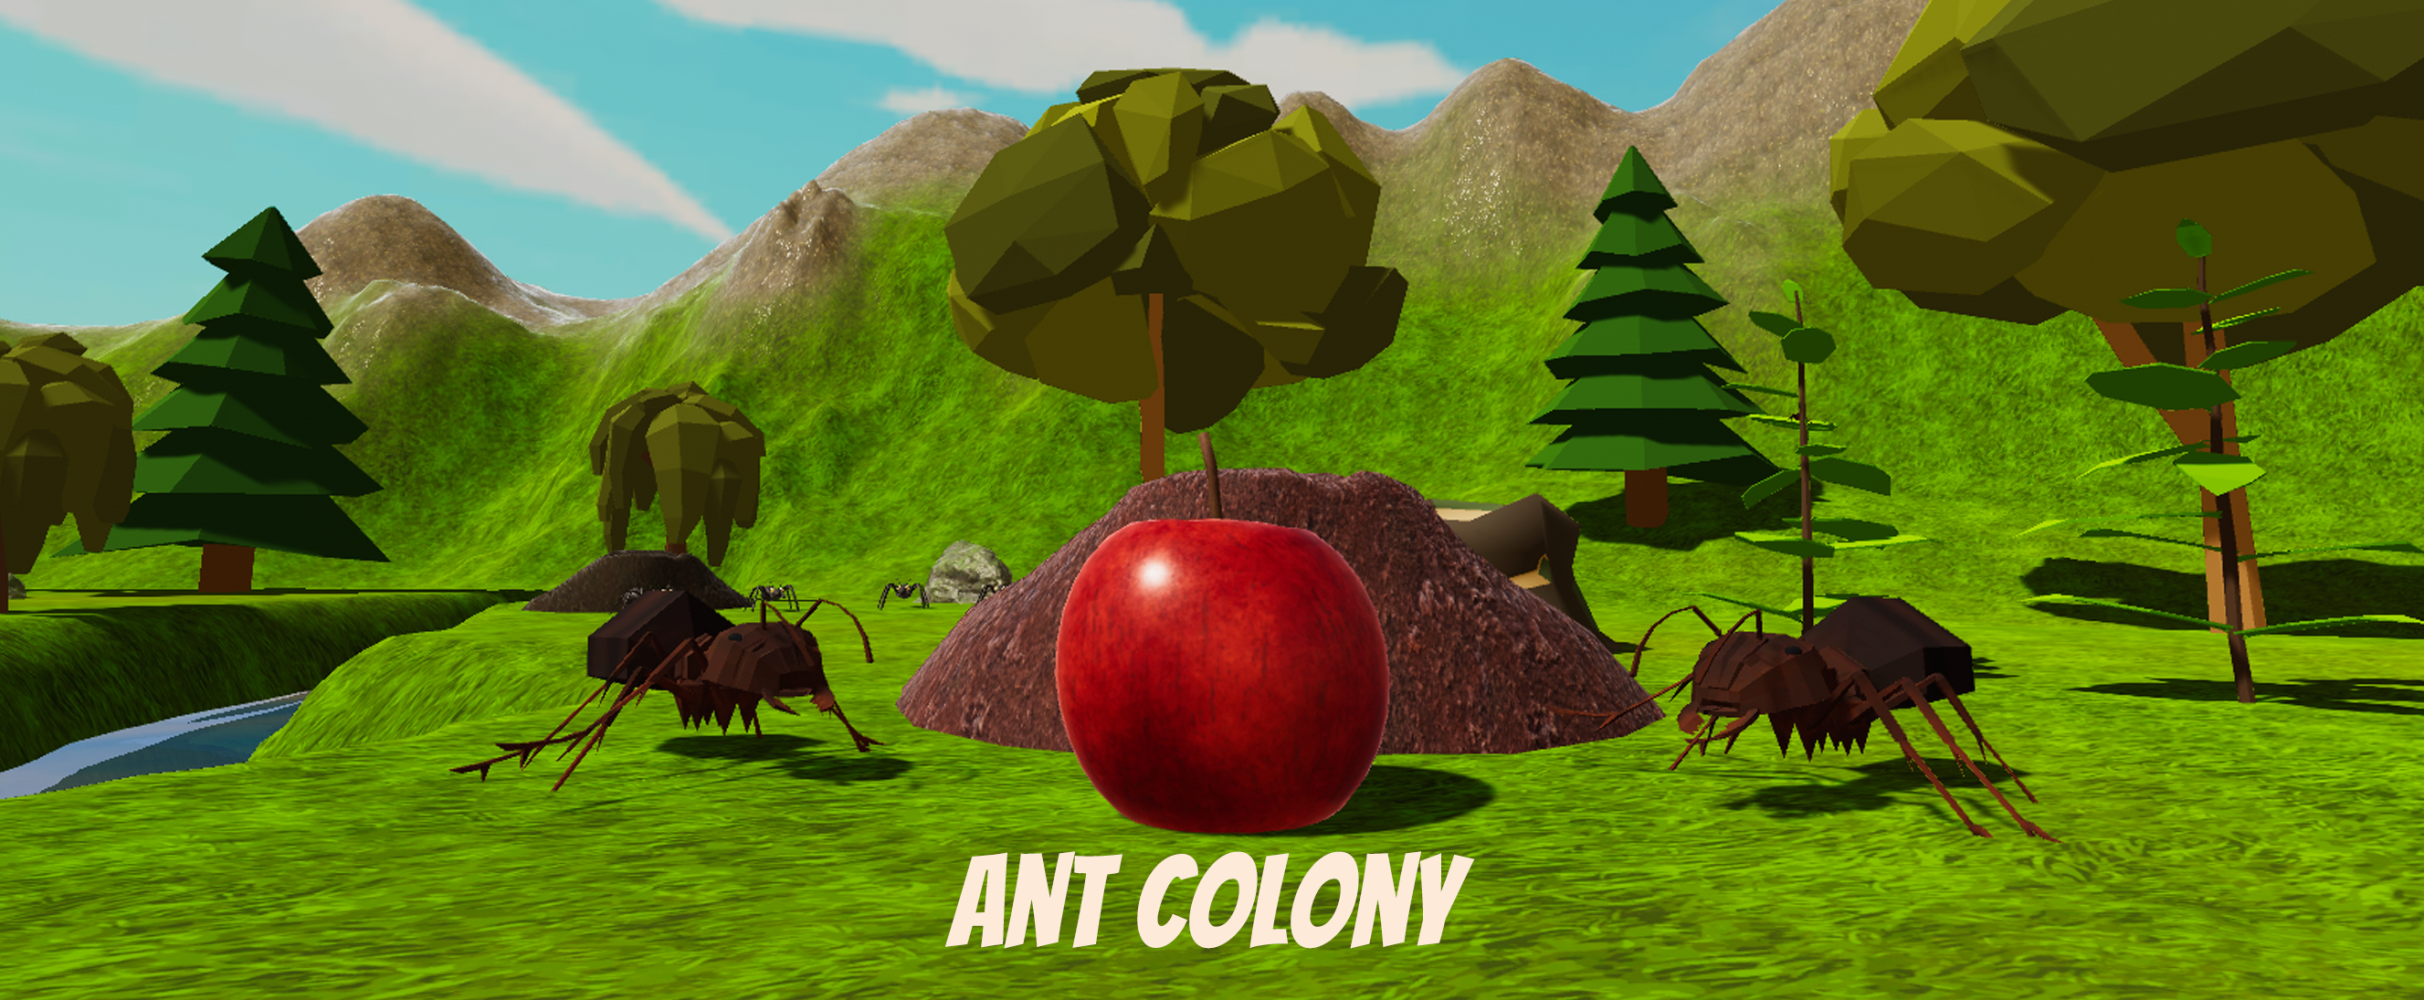 Ant Colony ART